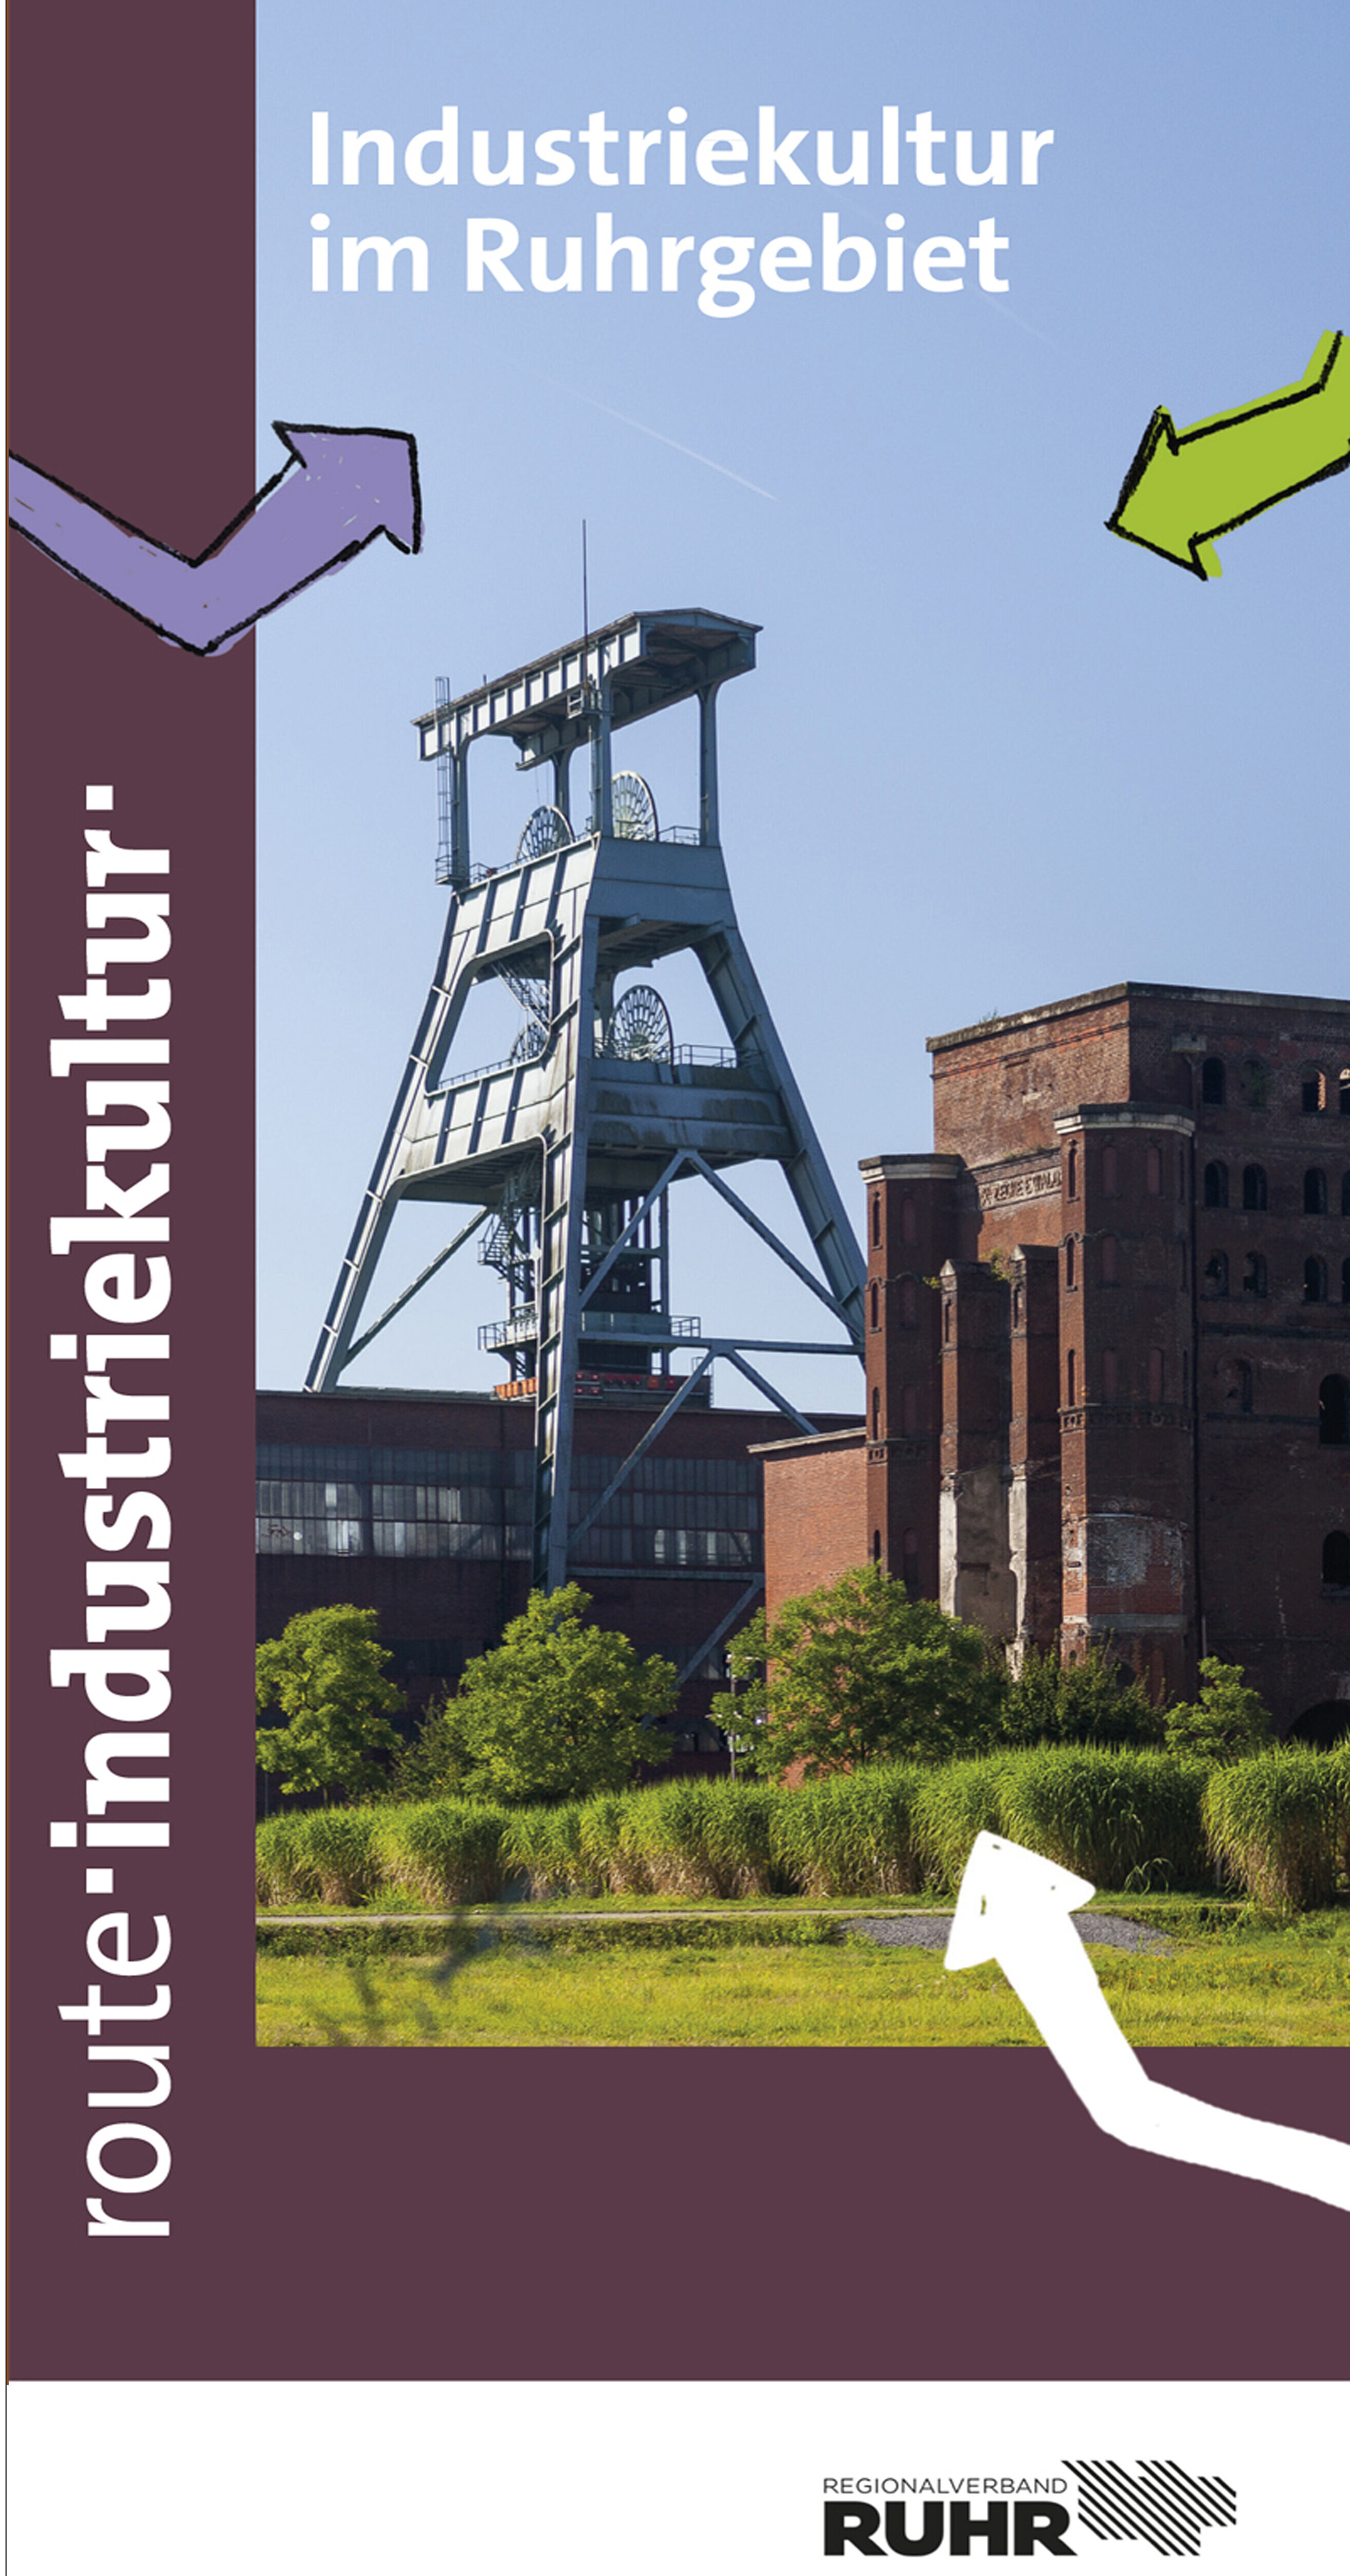 Der Flyer "Industriekultur im Ruhrgebiet" liefert einen ersten Einblick ins Thema Industriekultur.